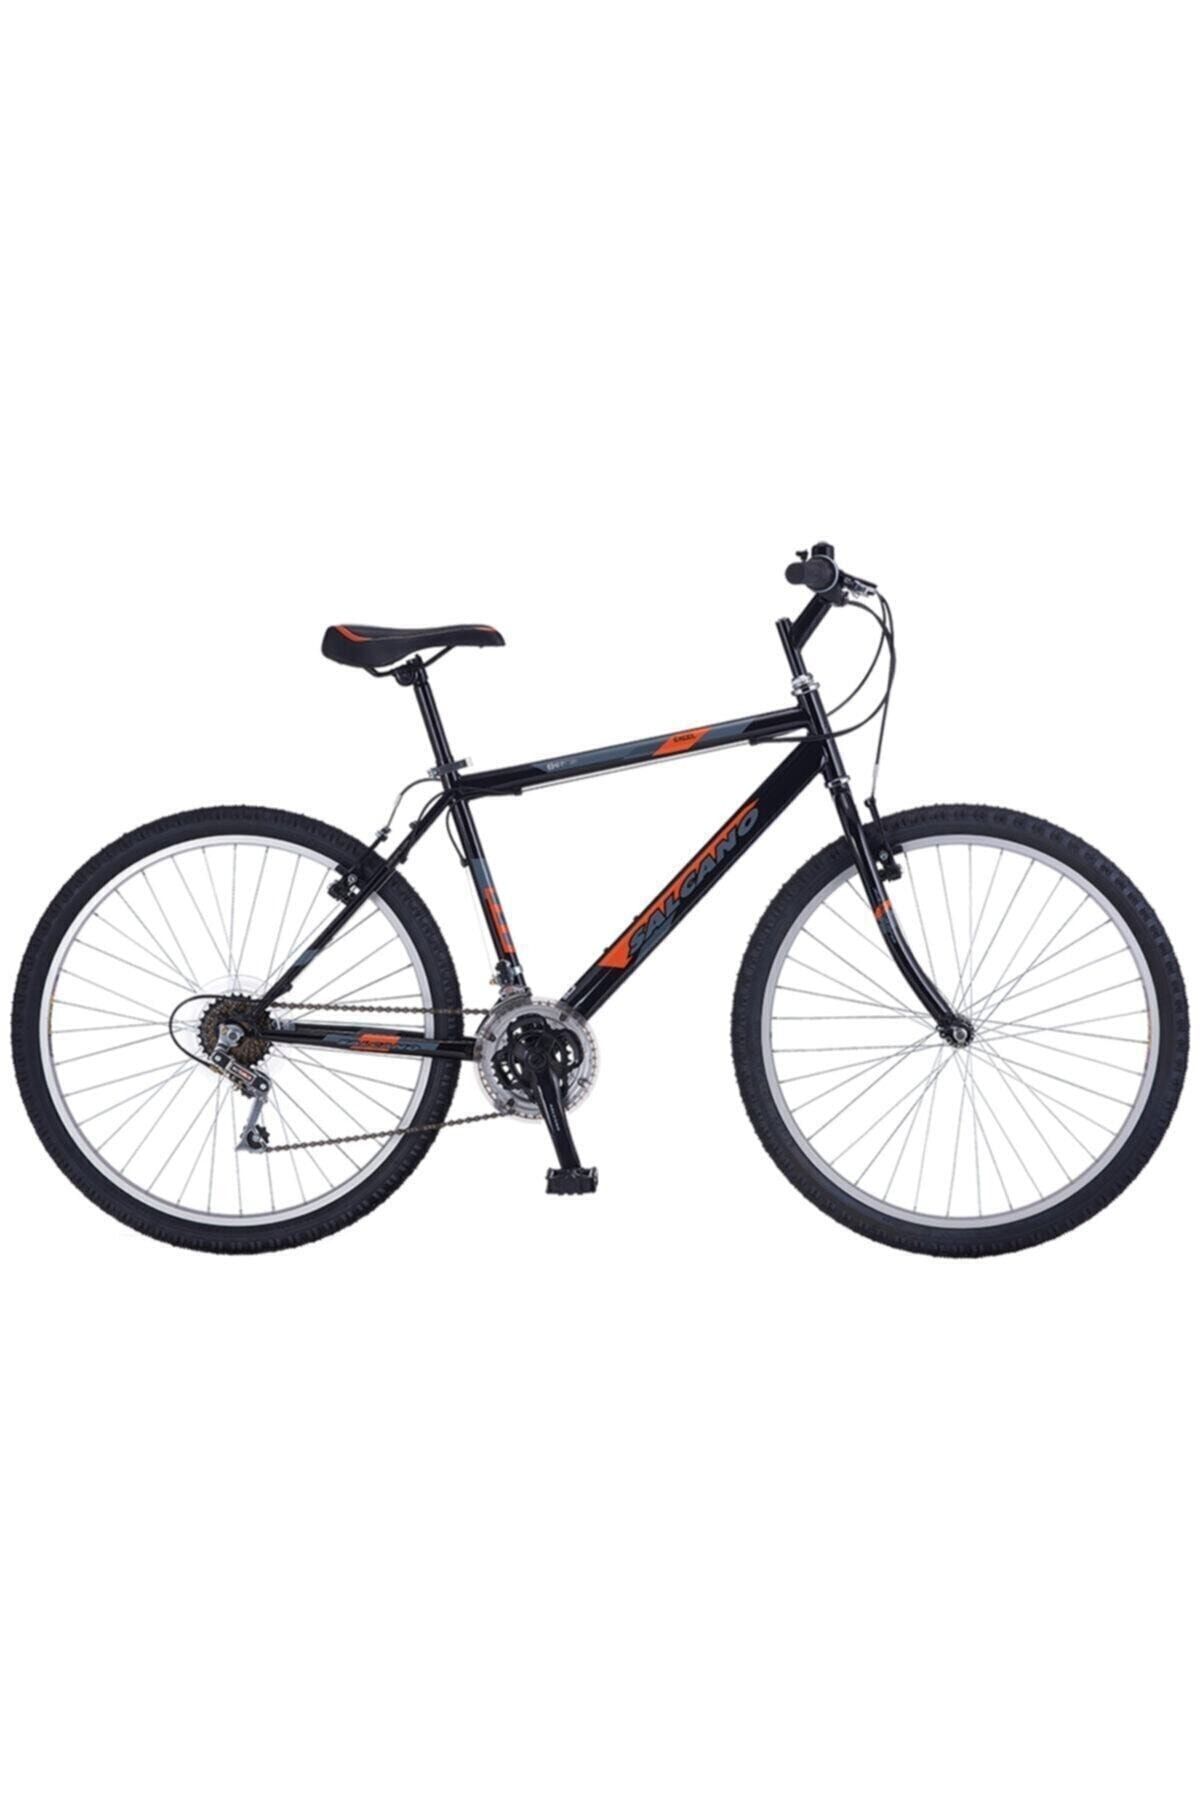 Salcano Excel 26 Jant (155/170 CM BOY) Bisiklet-koyu Lacivert Kırmızı Koyu Gri